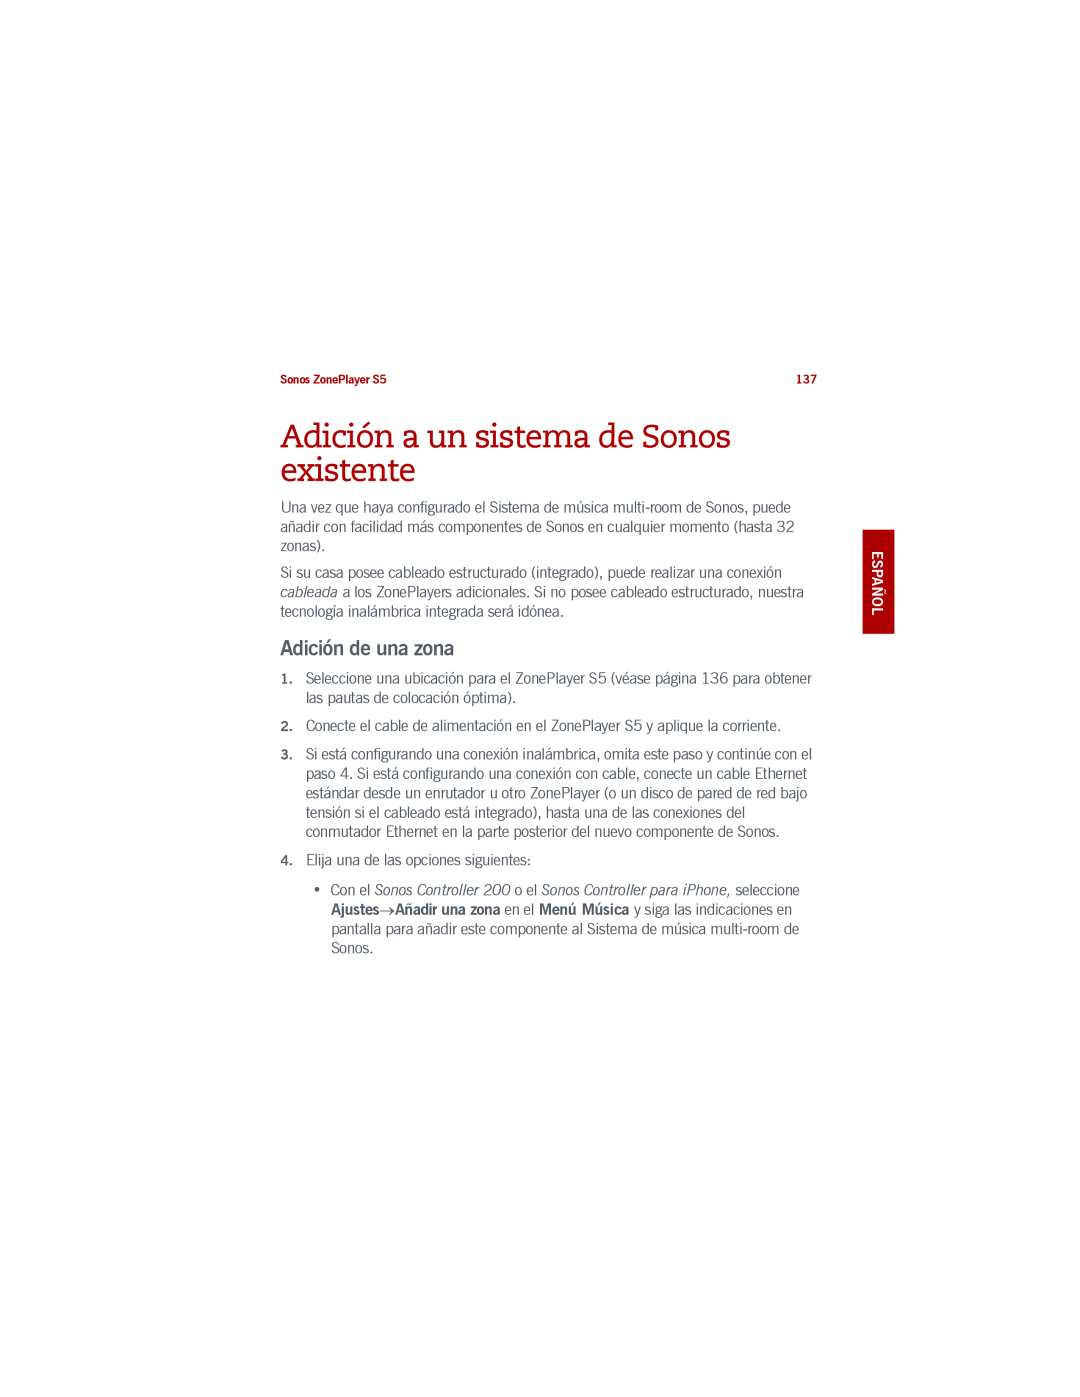 Sonos S5 manual Adición a un sistema de Sonos existente, Adición de una zona 